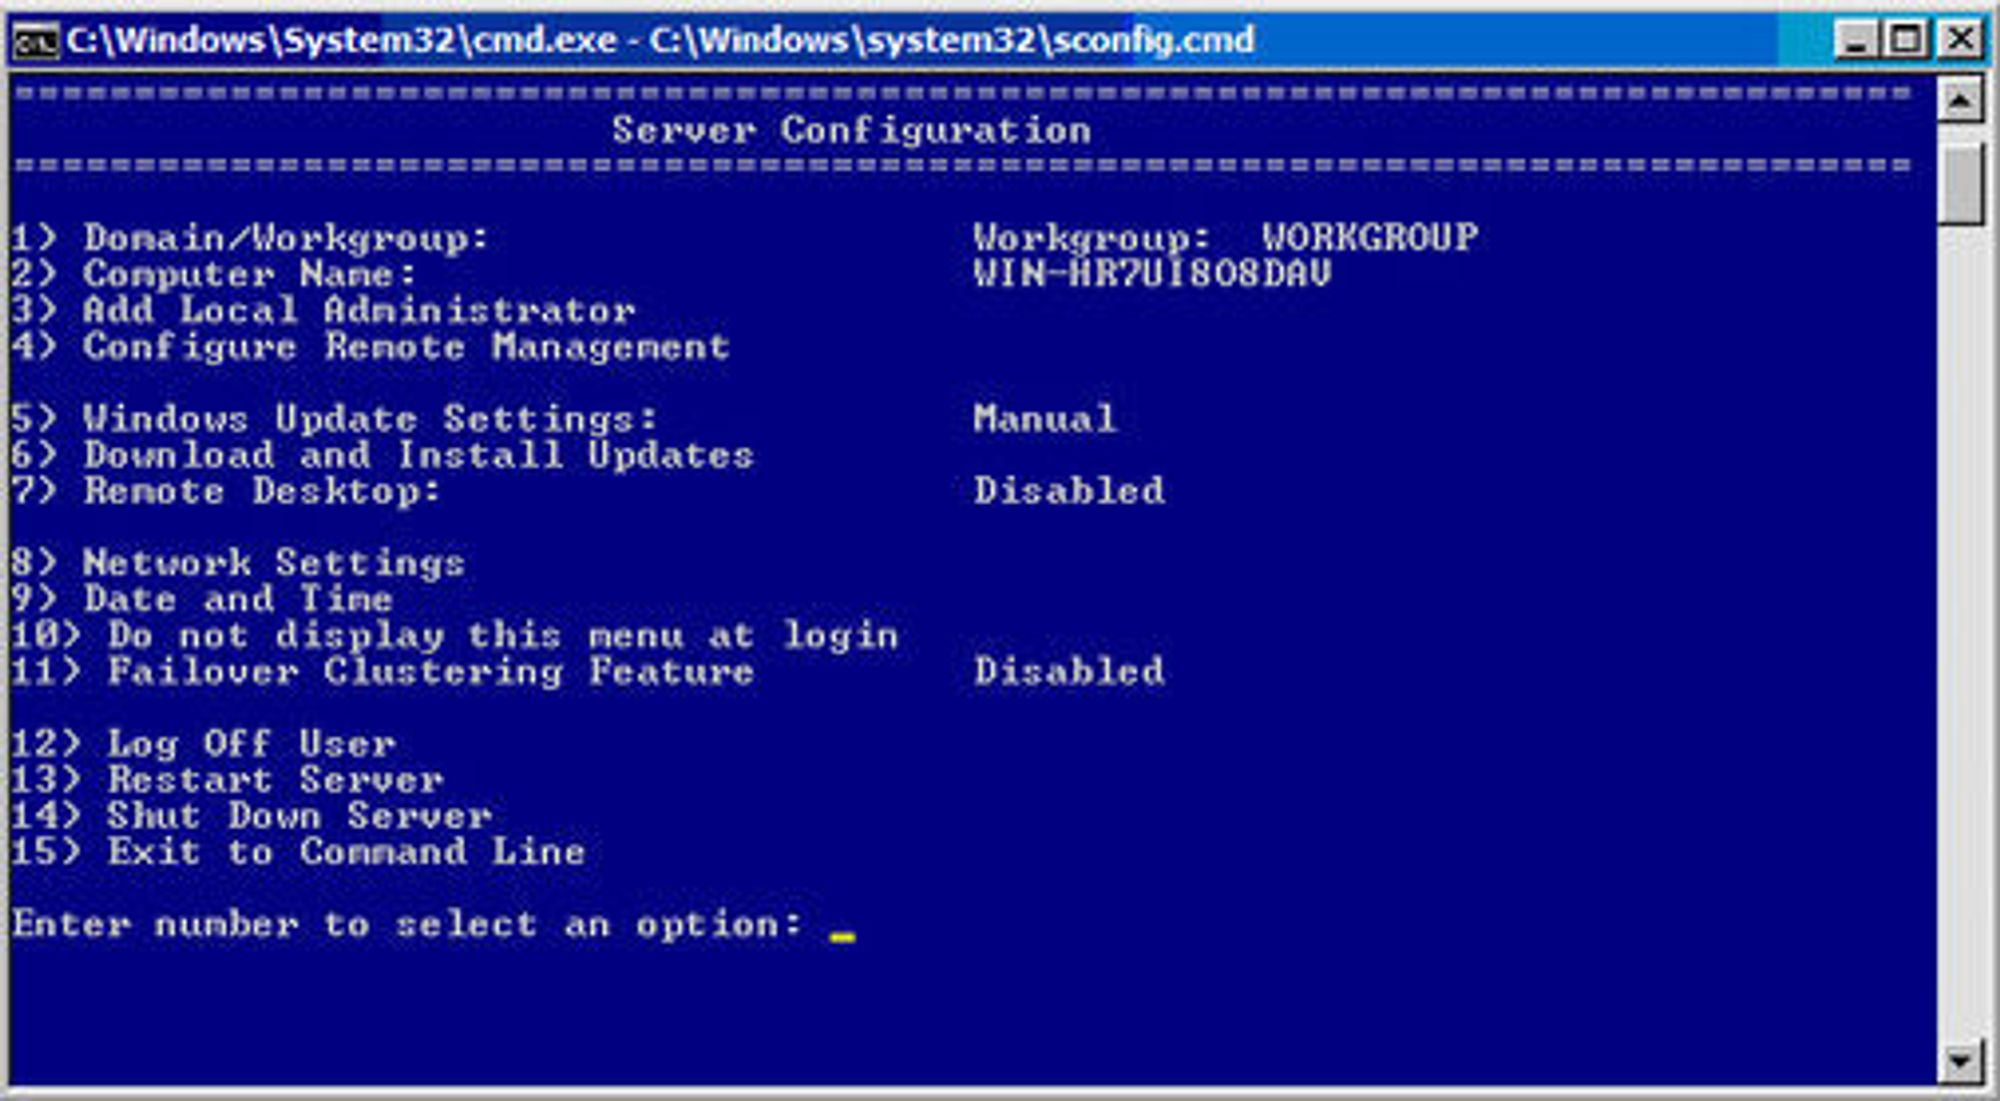 Hyper-V Server 2008 R2 har ikke grafisk brukergrensesnitt, men kan konfigureres med verktøyetServer Configuration.